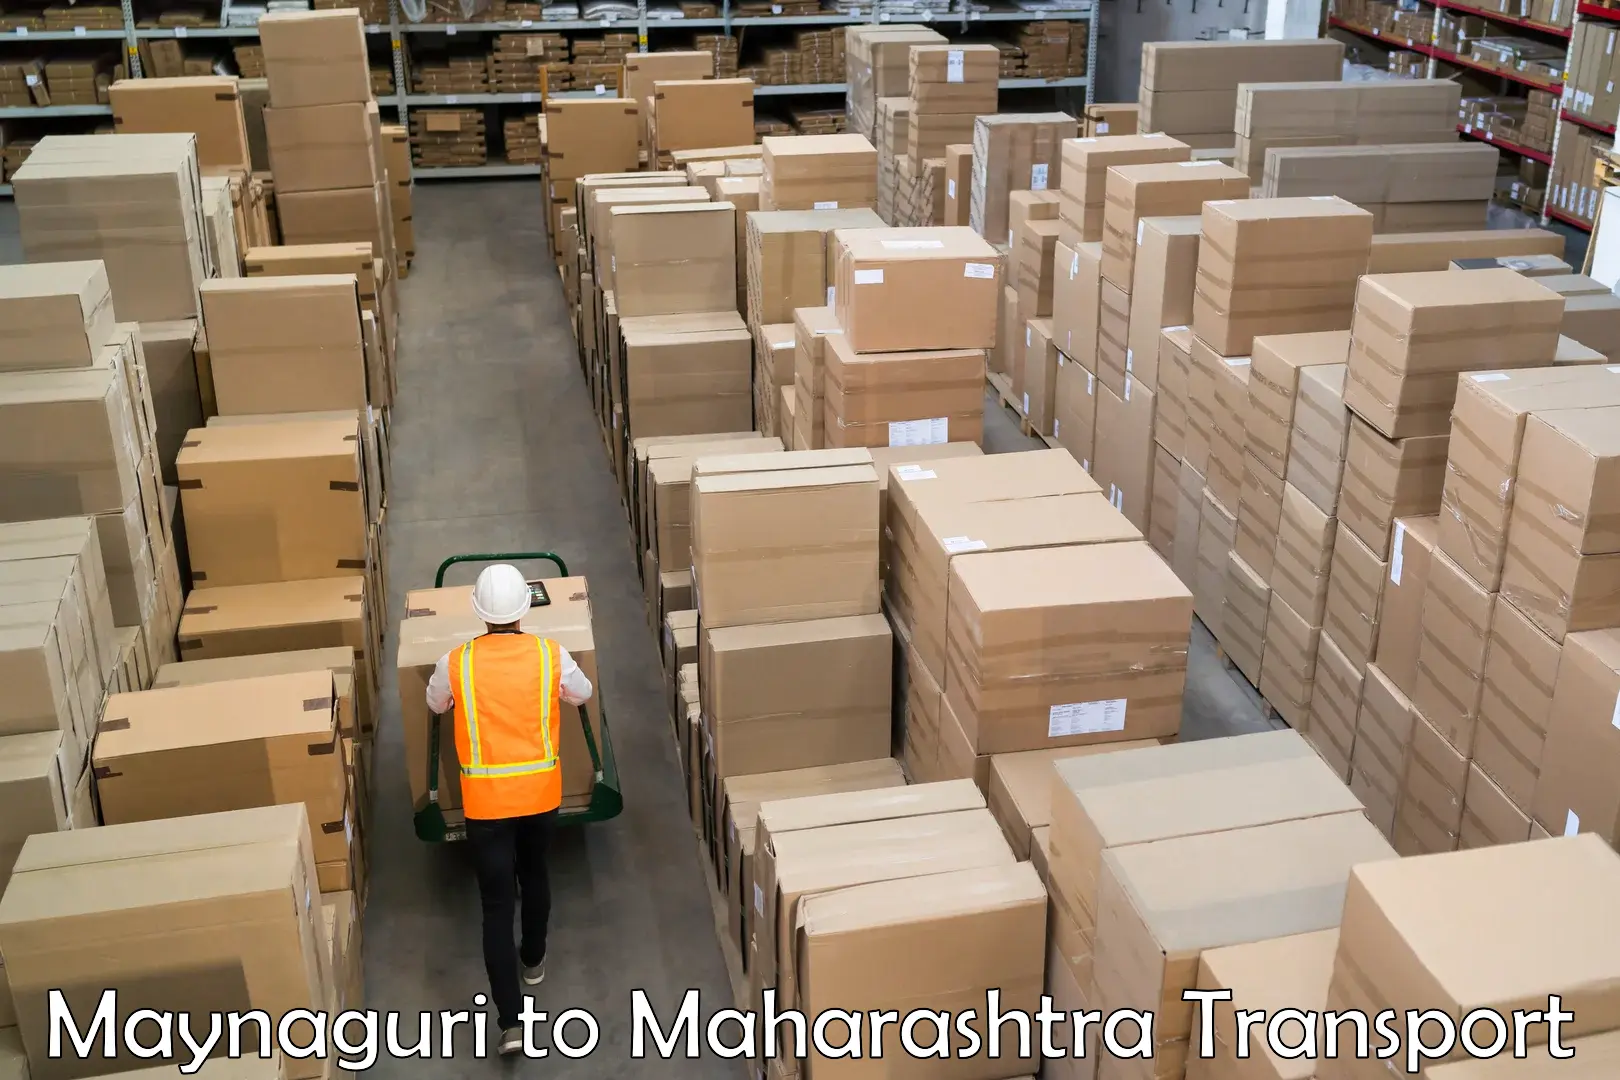 All India transport service Maynaguri to Maharashtra